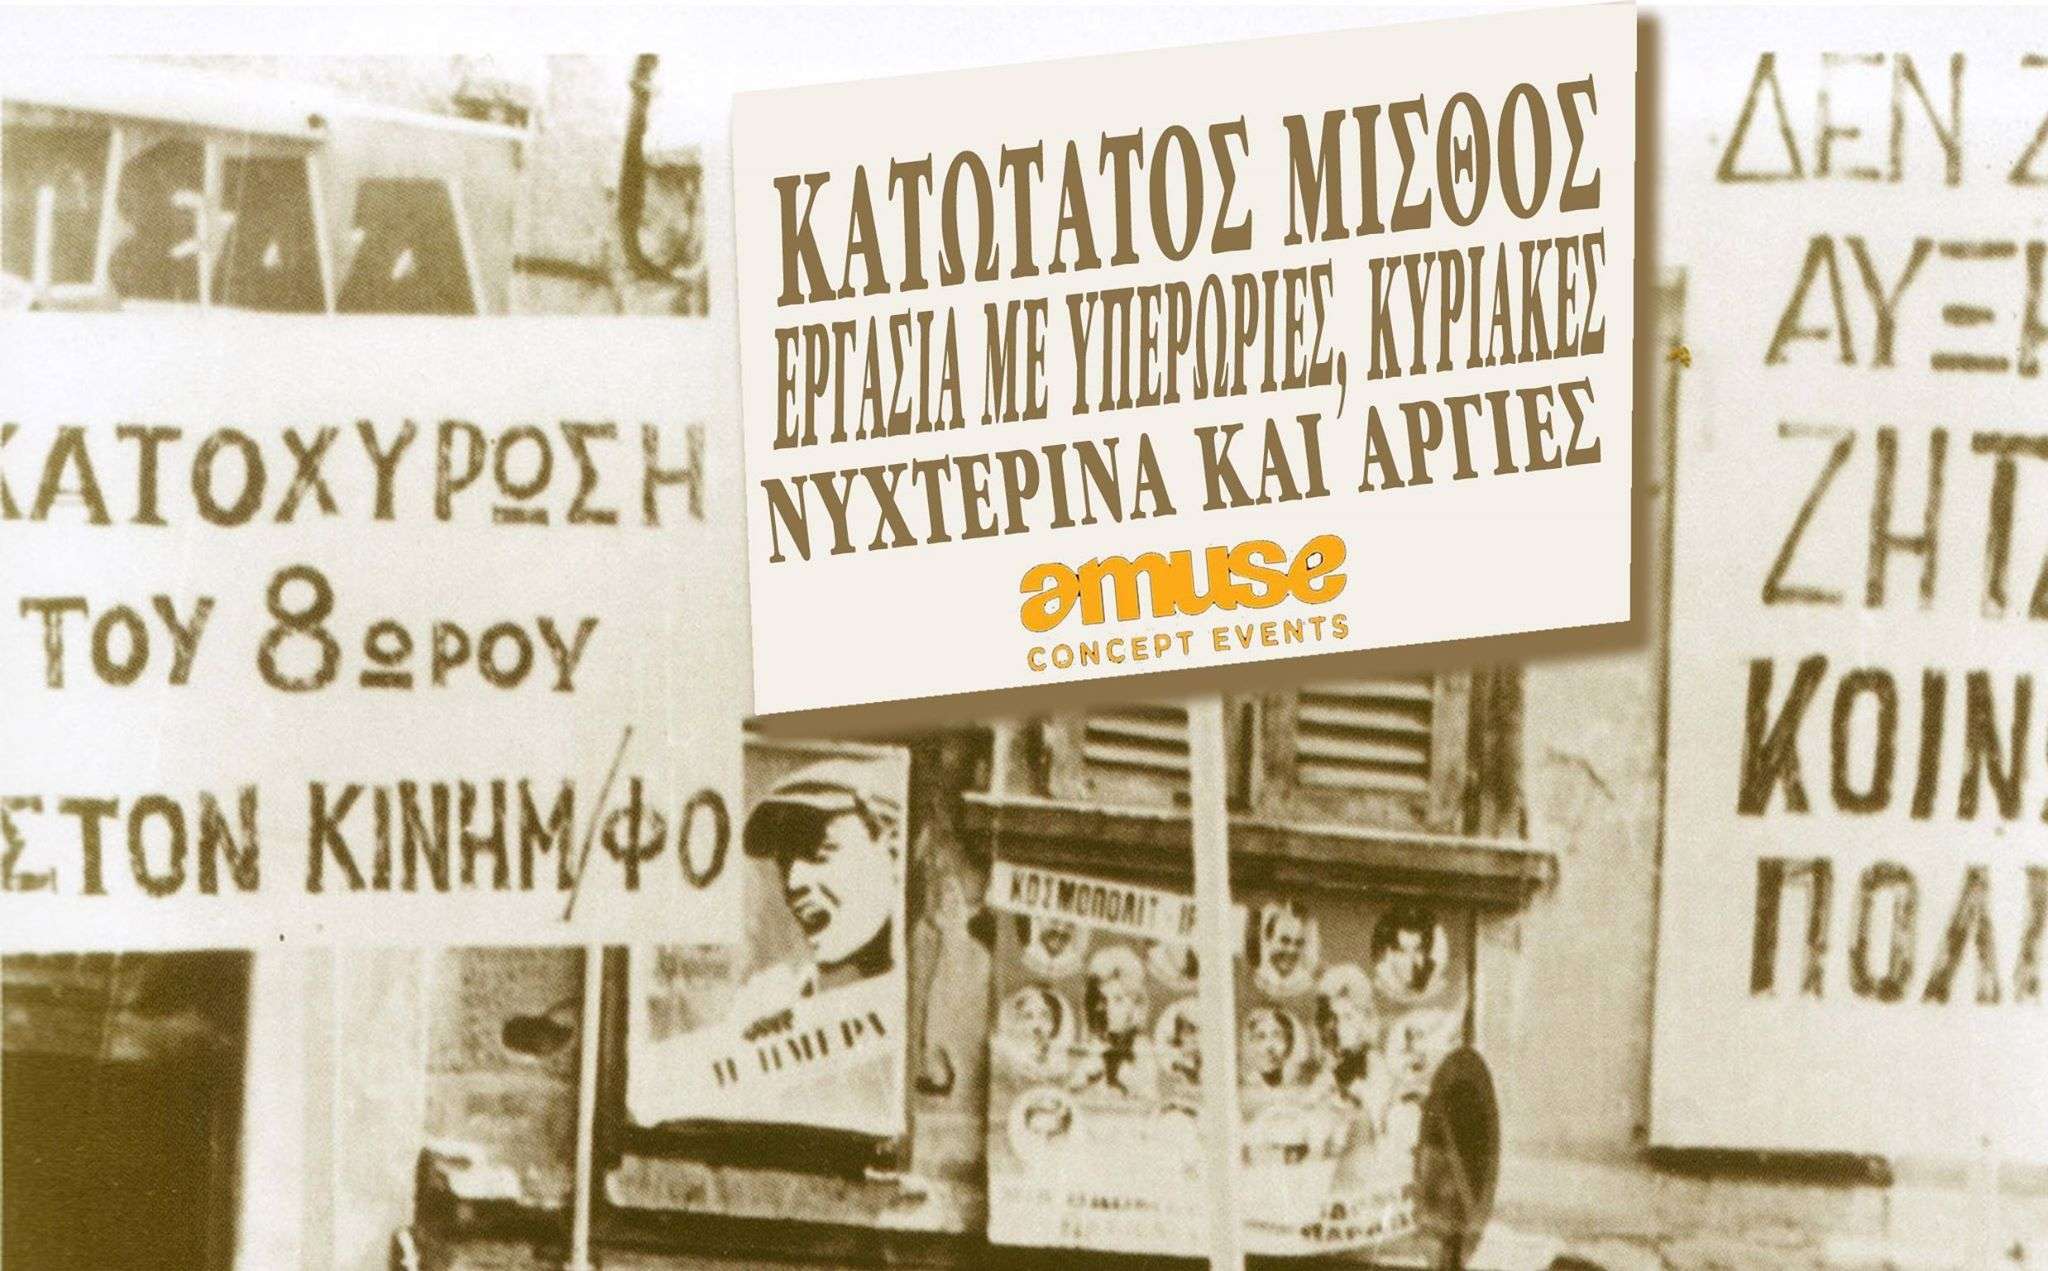 Αθήνα: Εκδίκαση της αγωγής του Α.Γ. κατά της AMUSE EVENT [Τρίτη 15/05, 09:00]